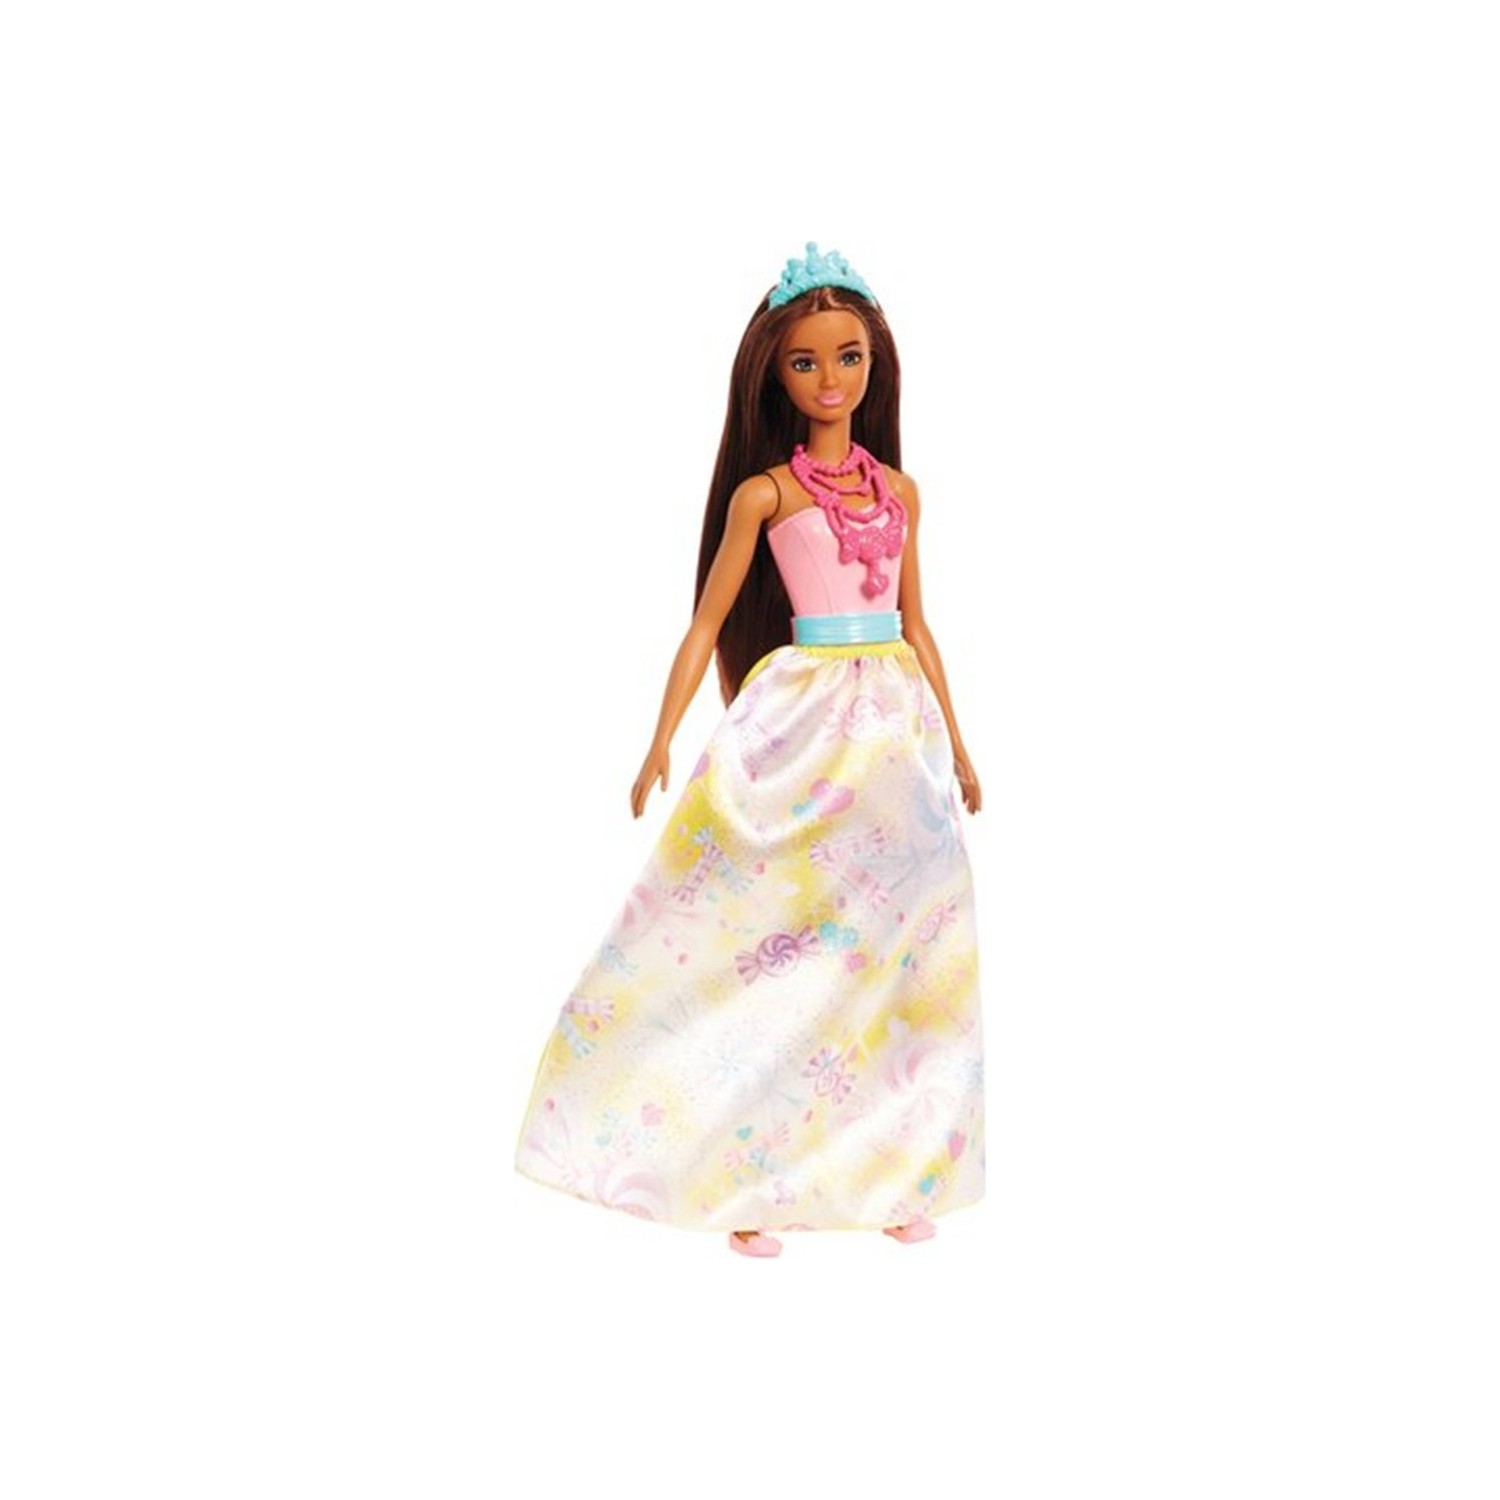 Кукла Barbie Dreamtopia Rainbow Latiin Princess кукла barbie dreamtopia mermaid fjc92